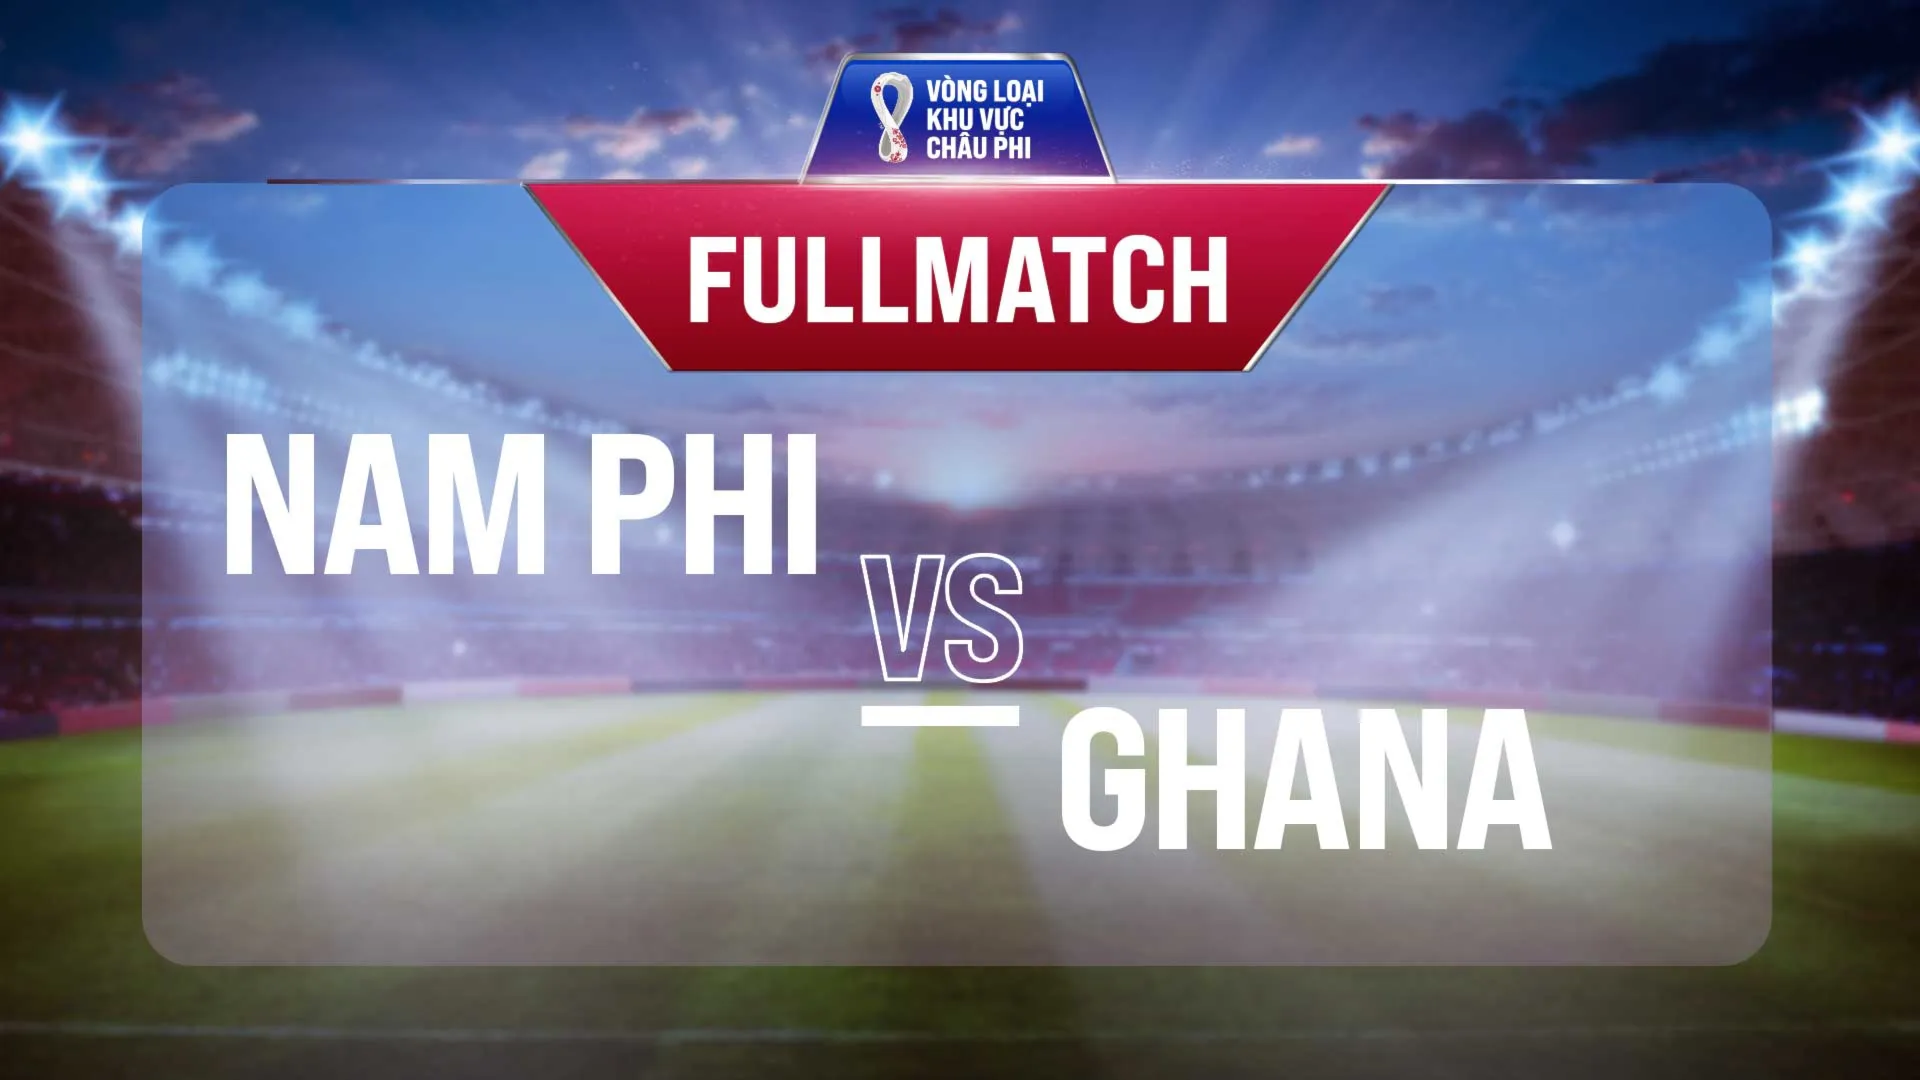 Full match Nam Phi - Ghana (Vòng Loại World Cup 2022 - Khu vực châu Phi)